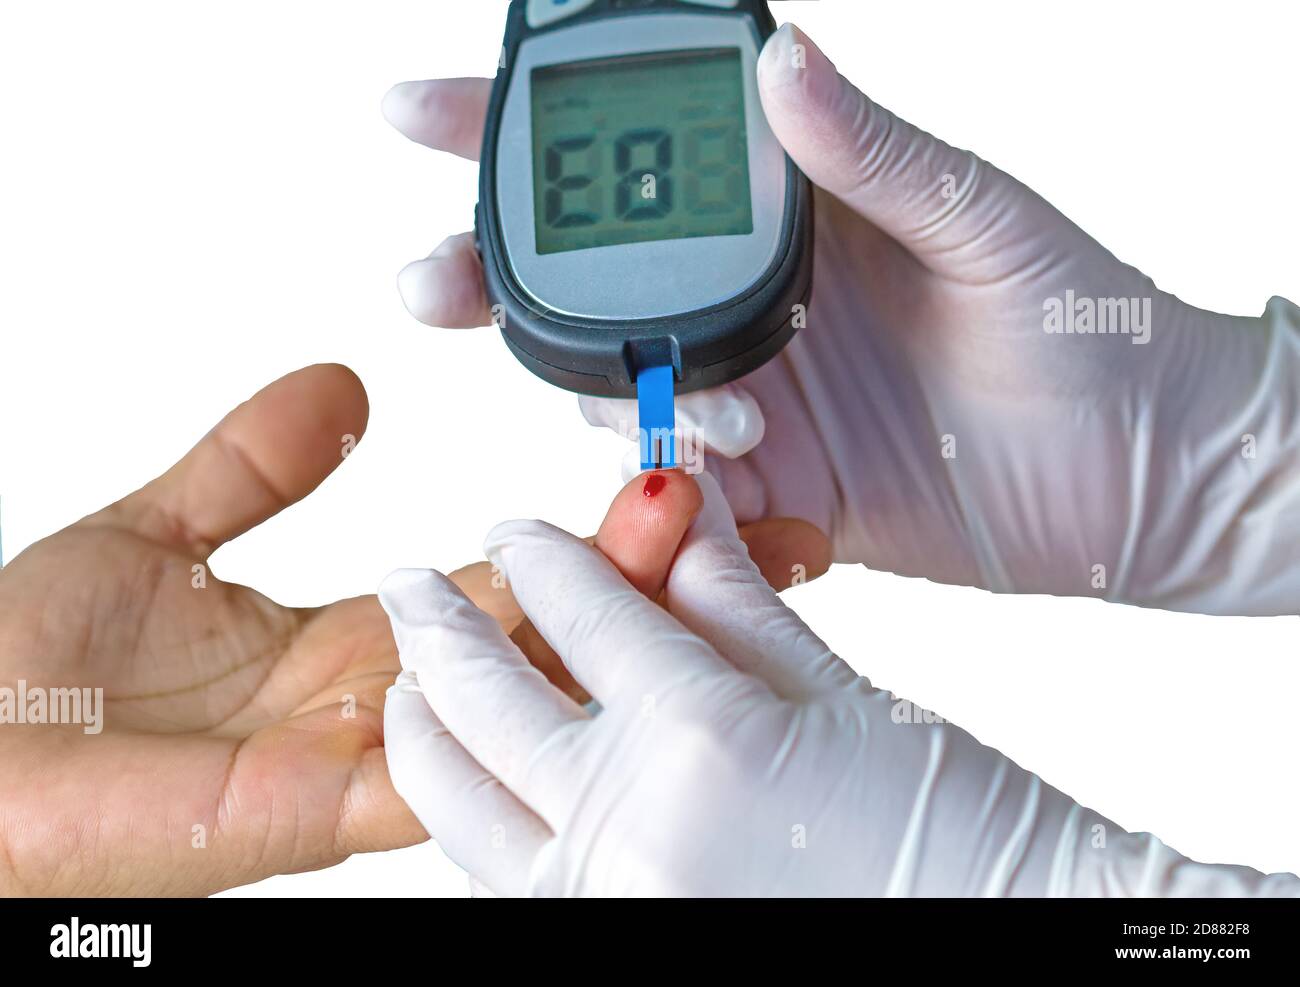 medidor de glucosa en sangre, el valor de azúcar en sangre se mide